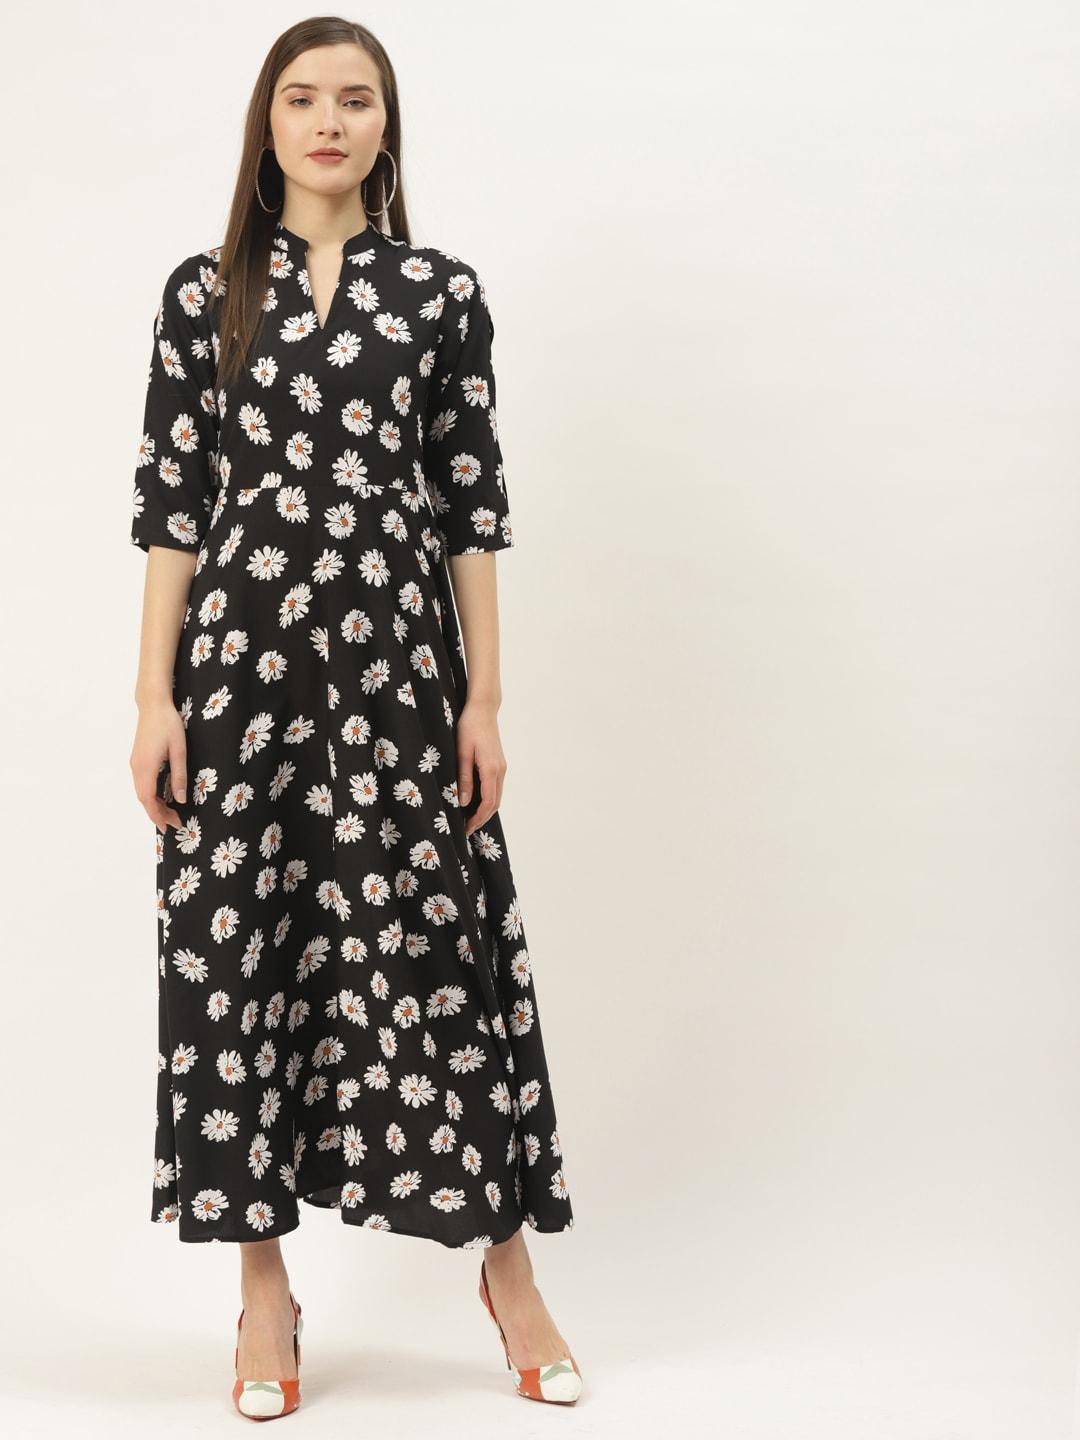 Deewa Women Black & White Floral Print Maxi Dress